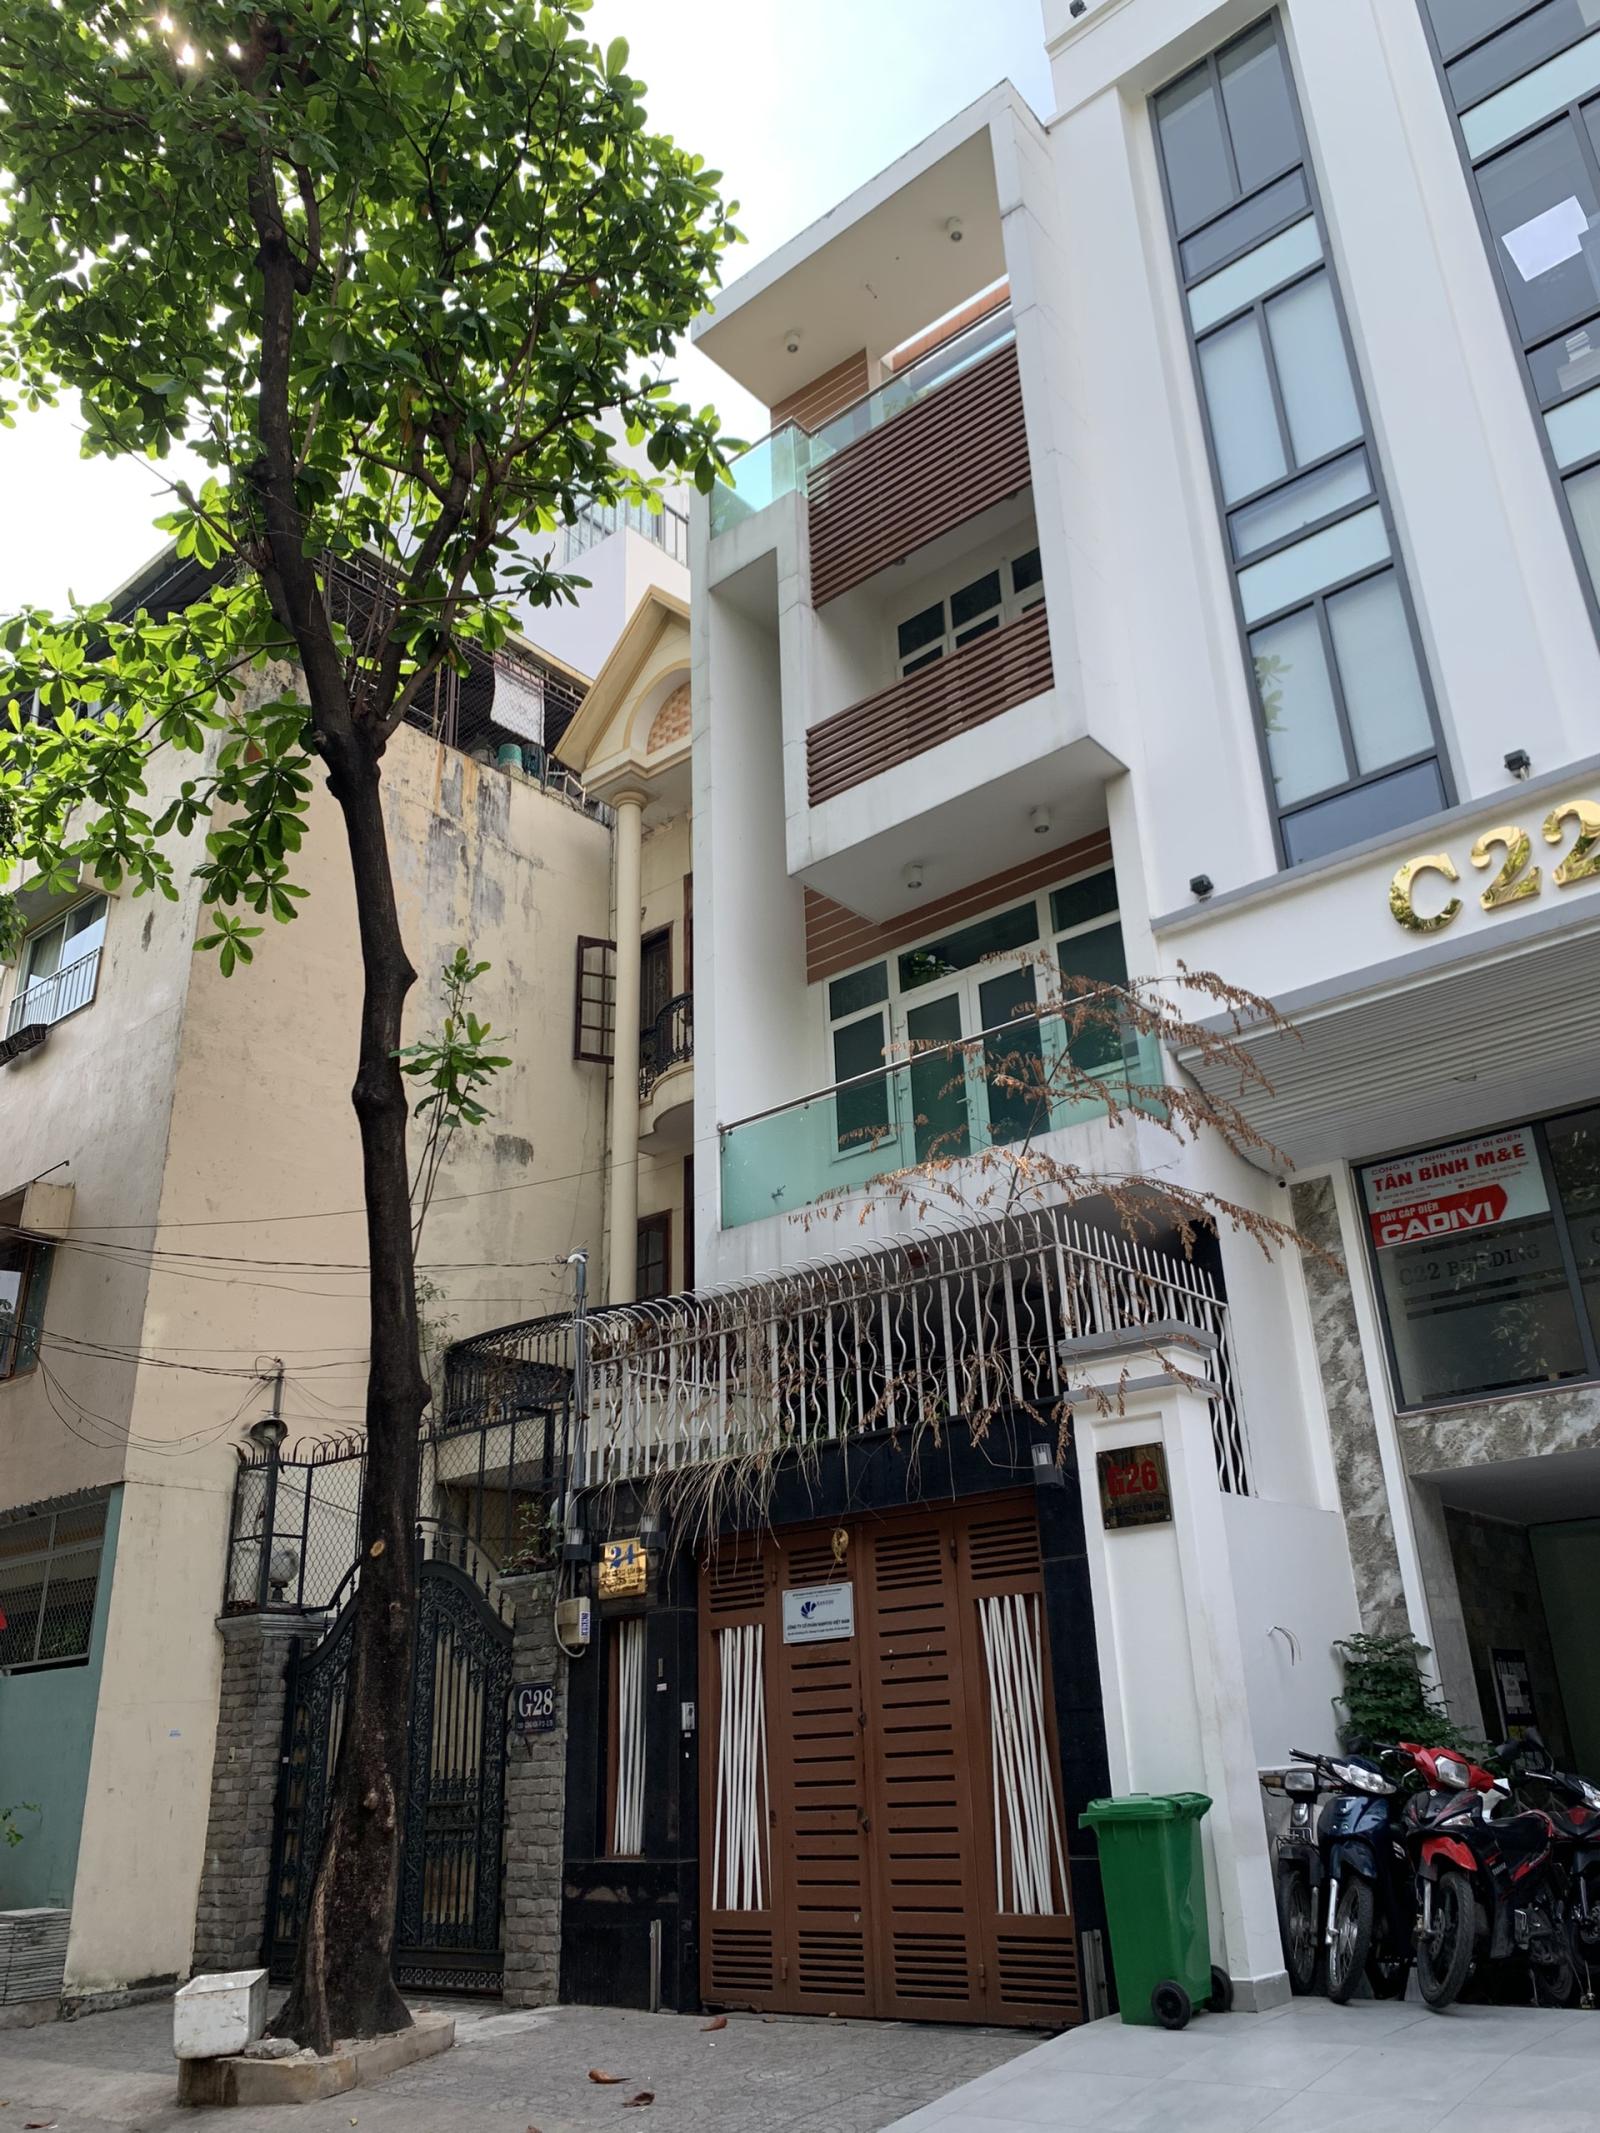 Bán nhà hẻm Hồng Hà Tân Bình, nhà mới 4 lầu, giá 12.7 tỷ, lh Thuý xem nhà